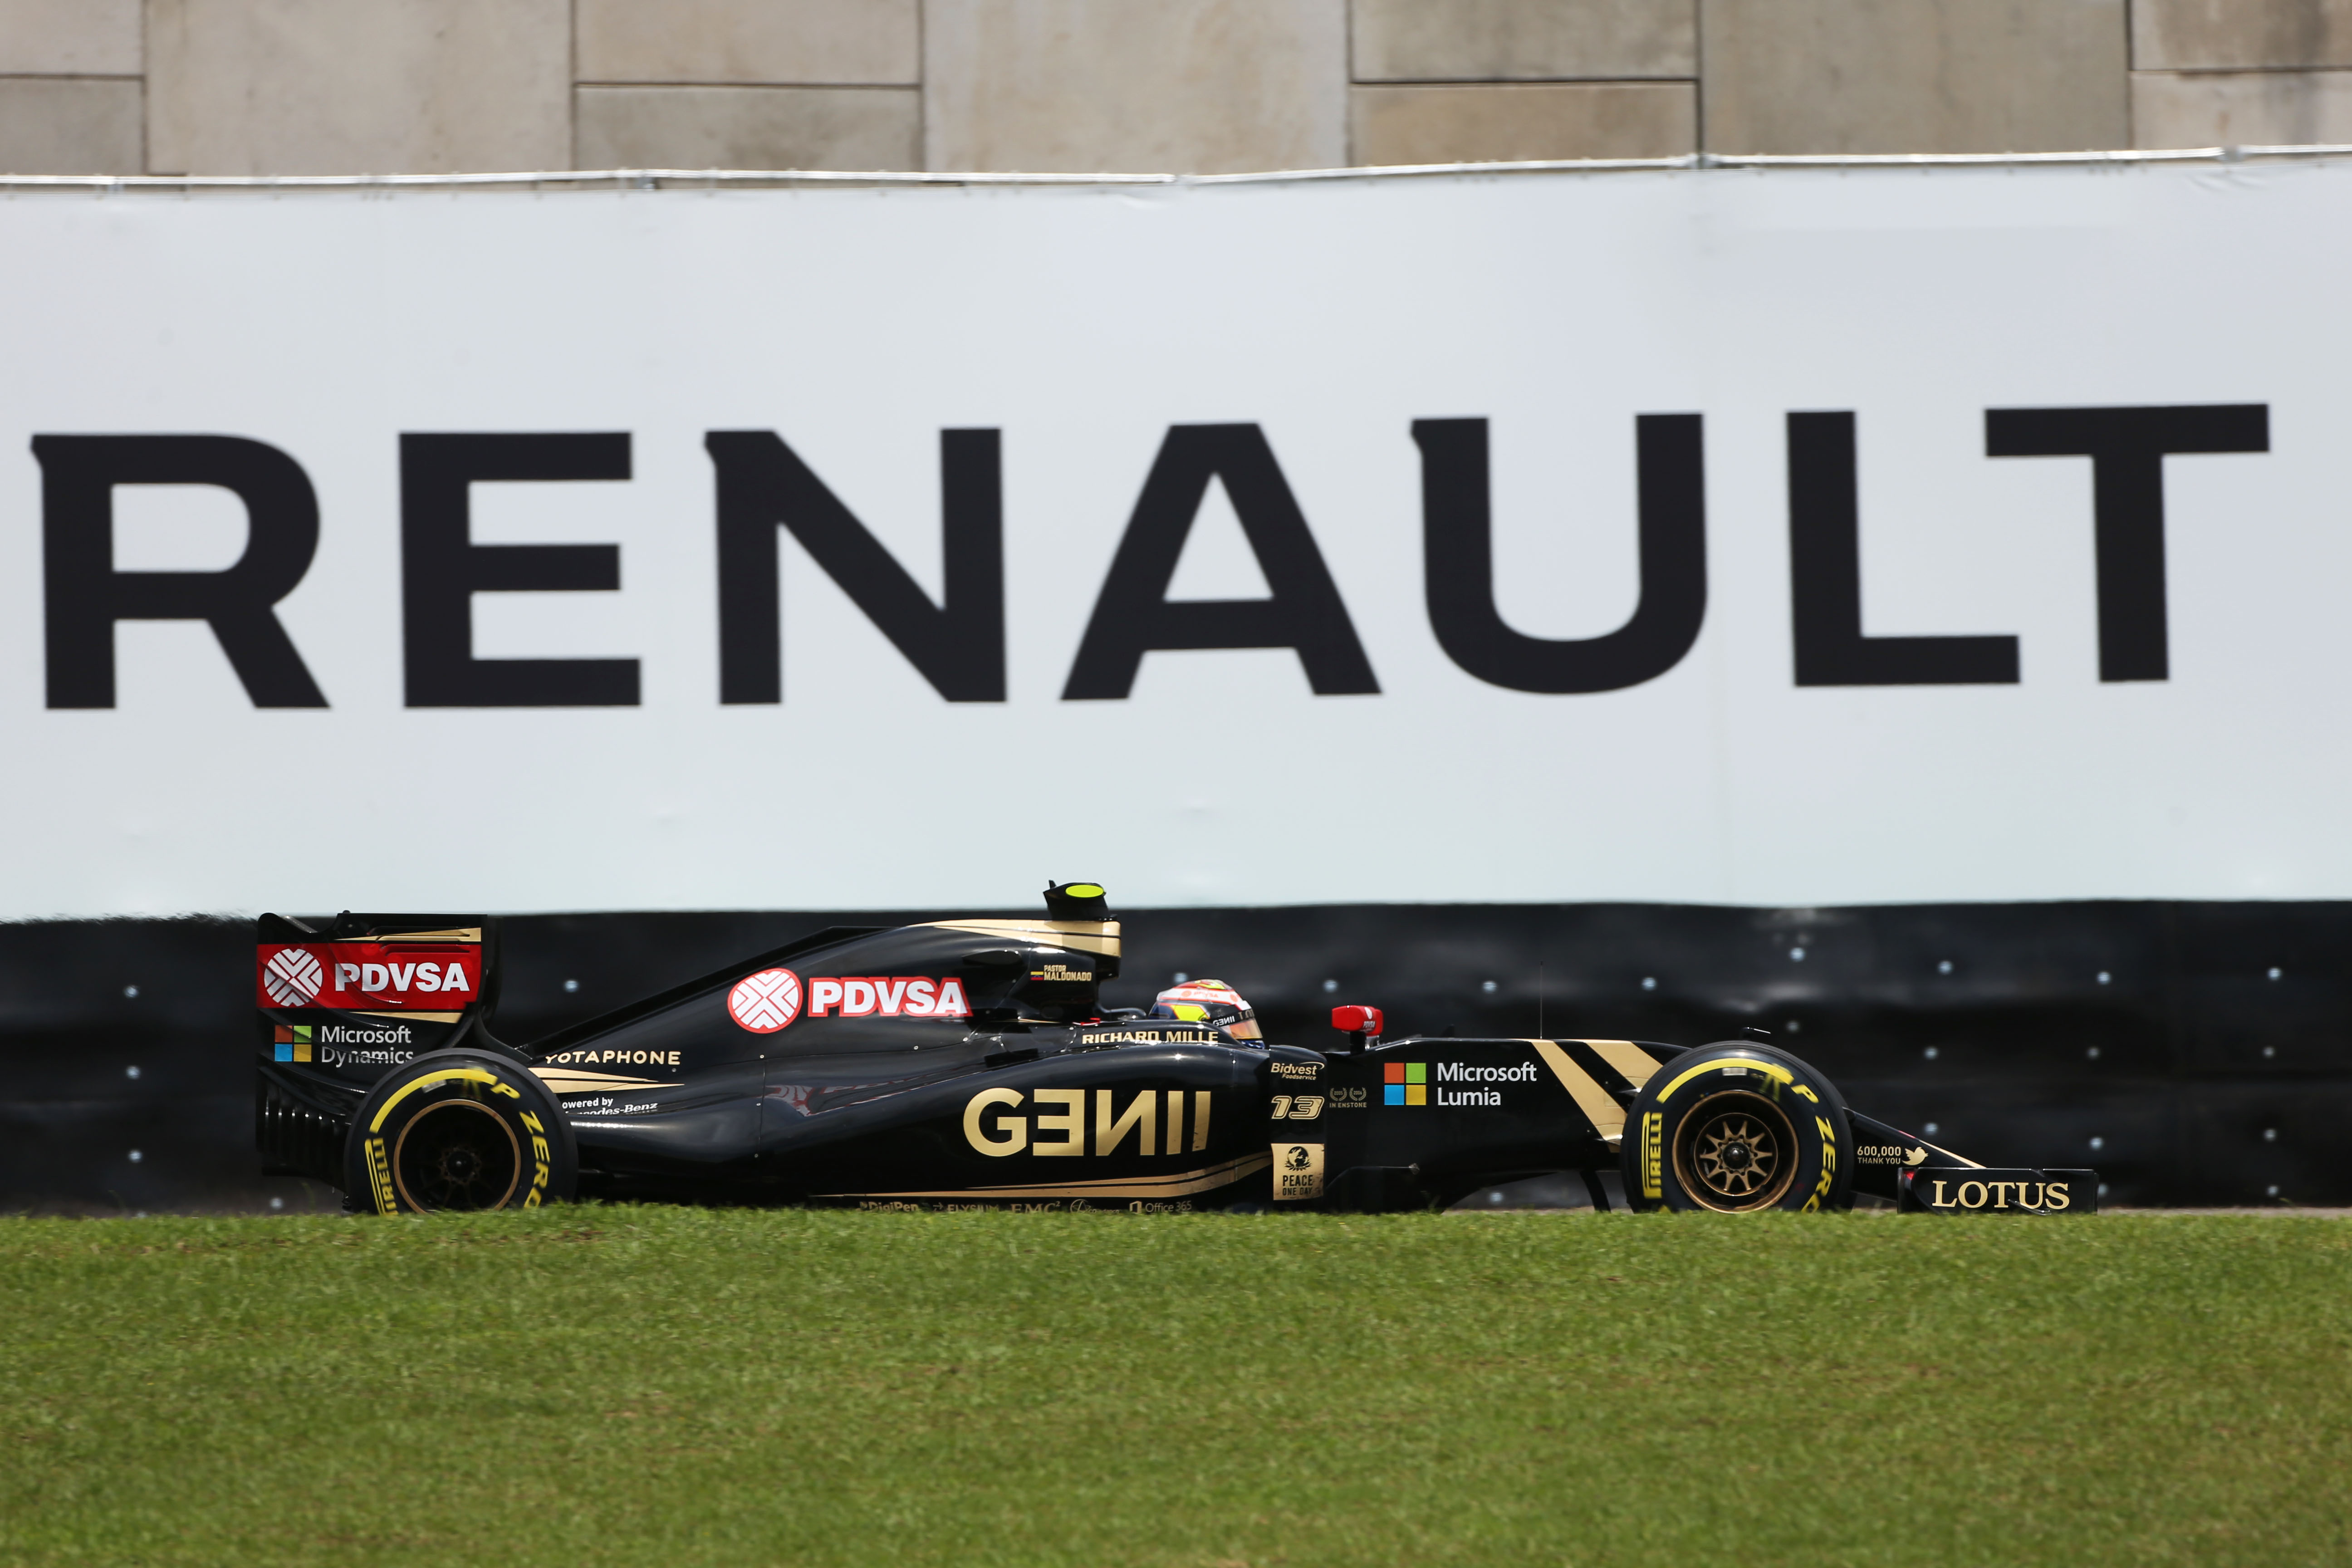 Officieel: Renault neemt Lotus F1 over